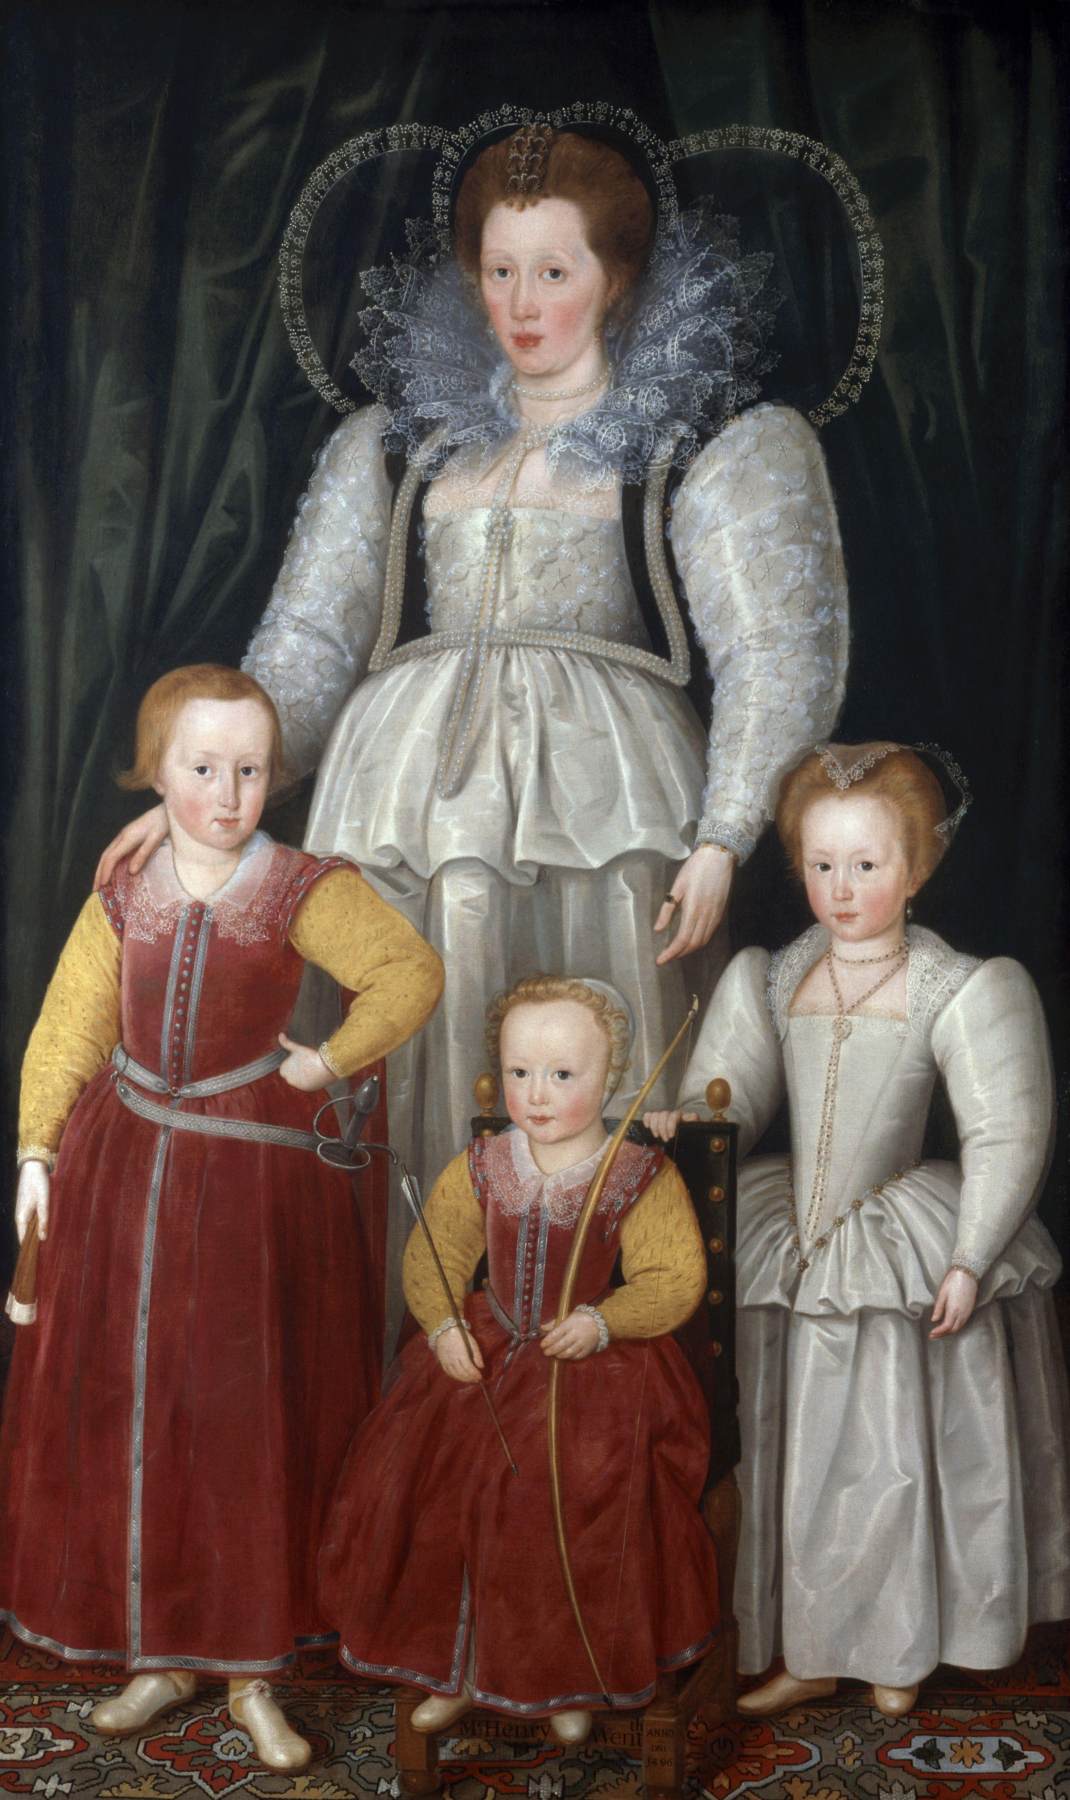 Ana, Lady Pope çocuklarıyla birlikte